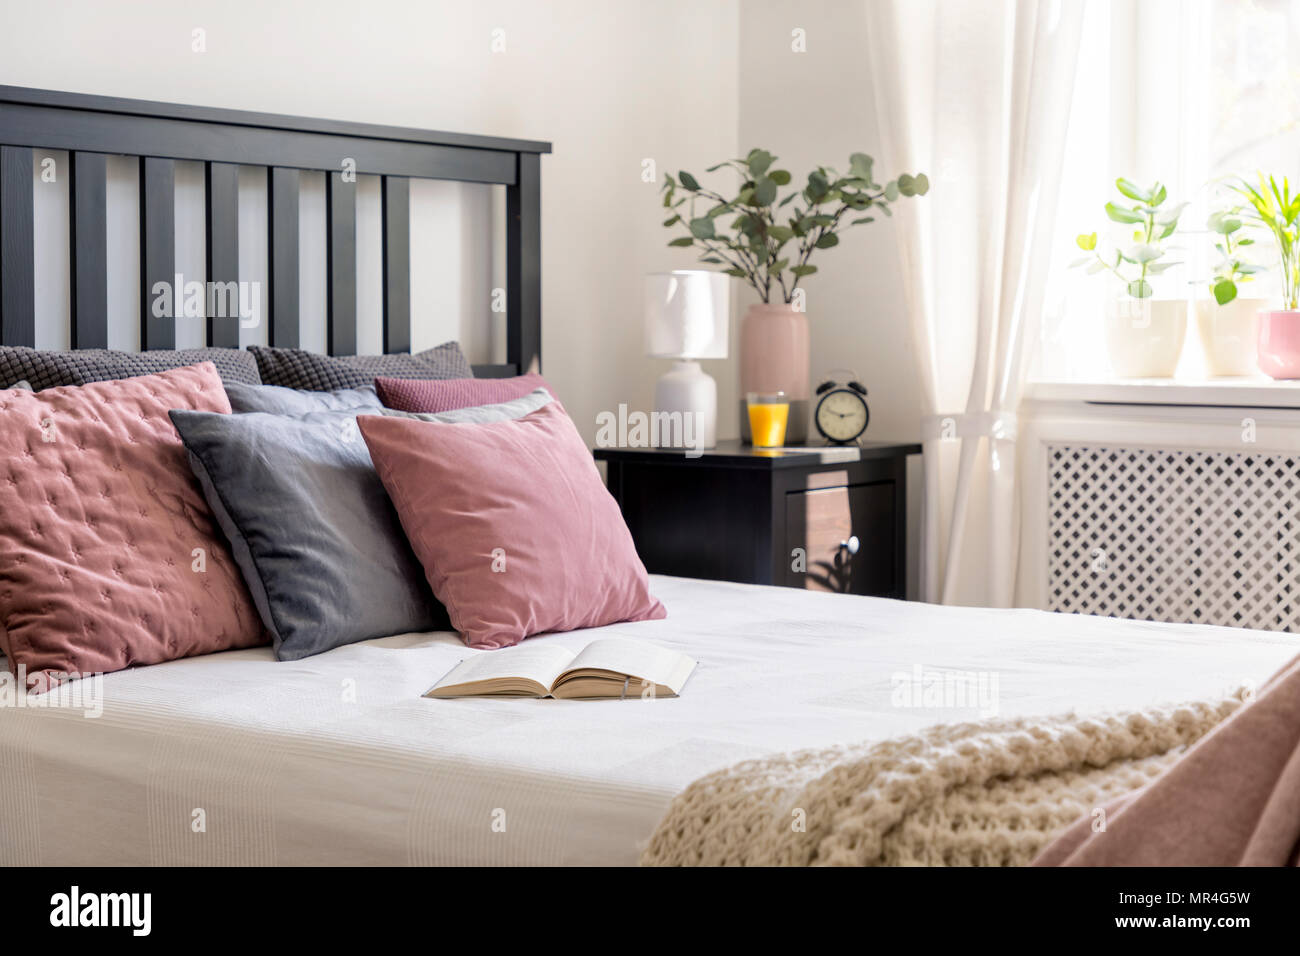 Close-up su di un libro e di rosa e grigio cuscino sul letto in camera da letto accogliente interno con impianto. Foto reale Foto Stock